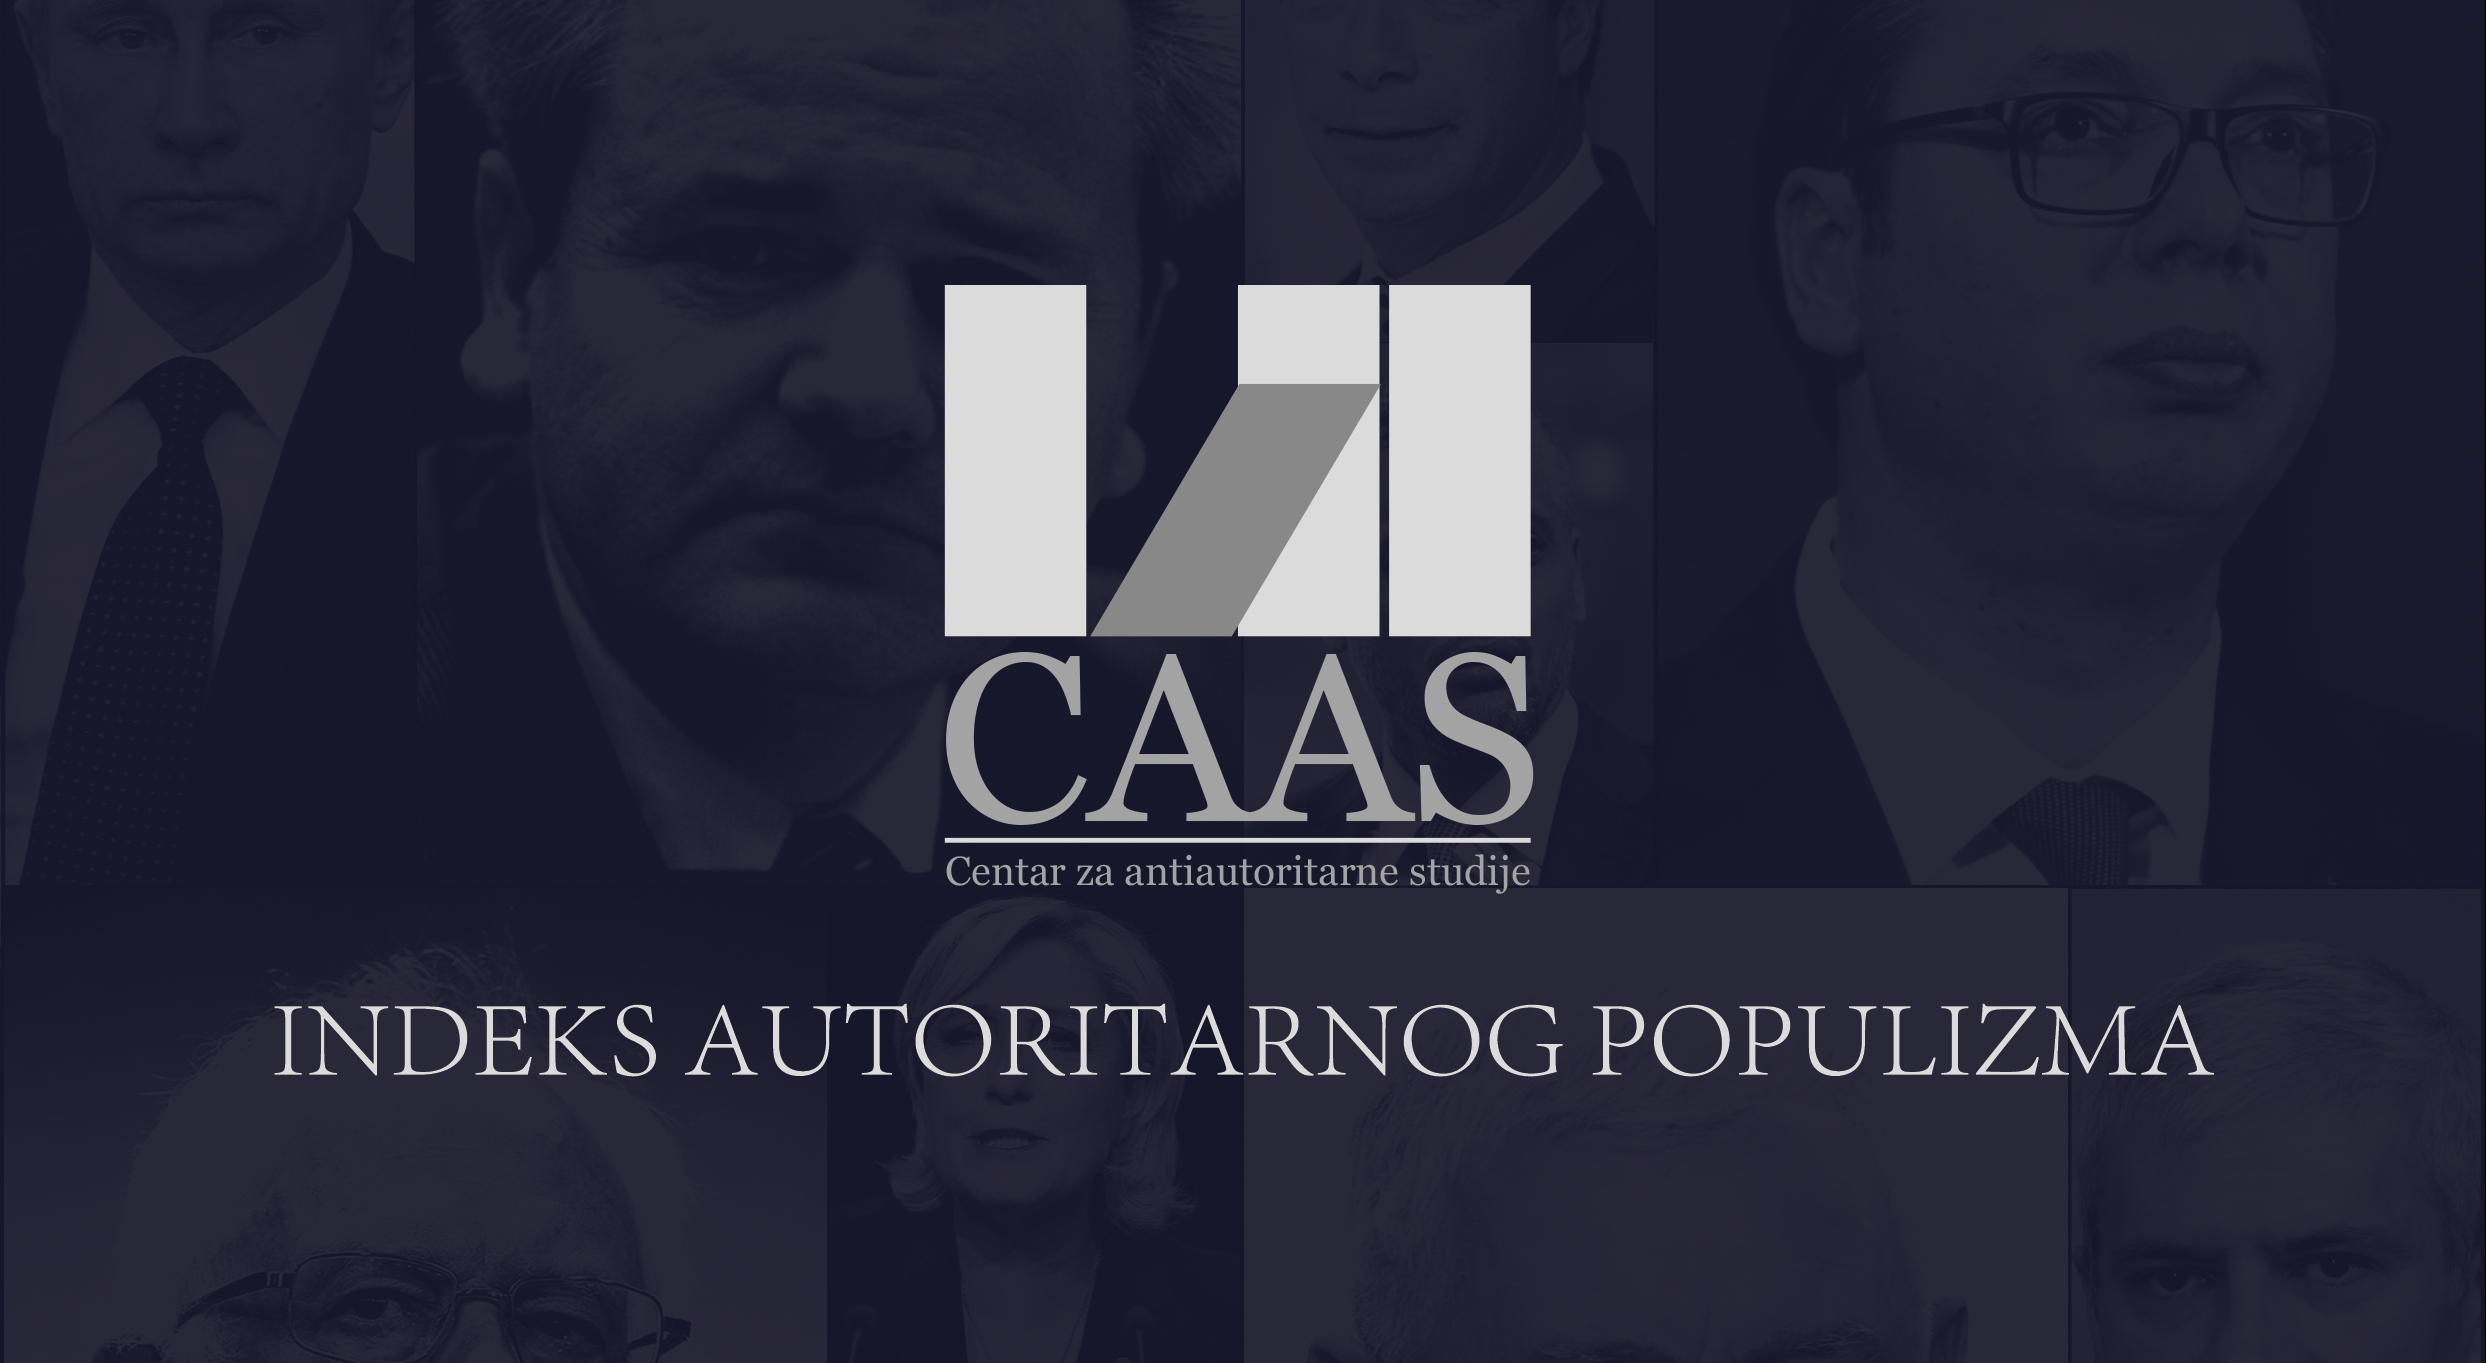 Pozivamo vas da prisustvujete promociji CAAS Indeksa autoritarnog populizma 18.12.2018. u 12:30 u Medija centru